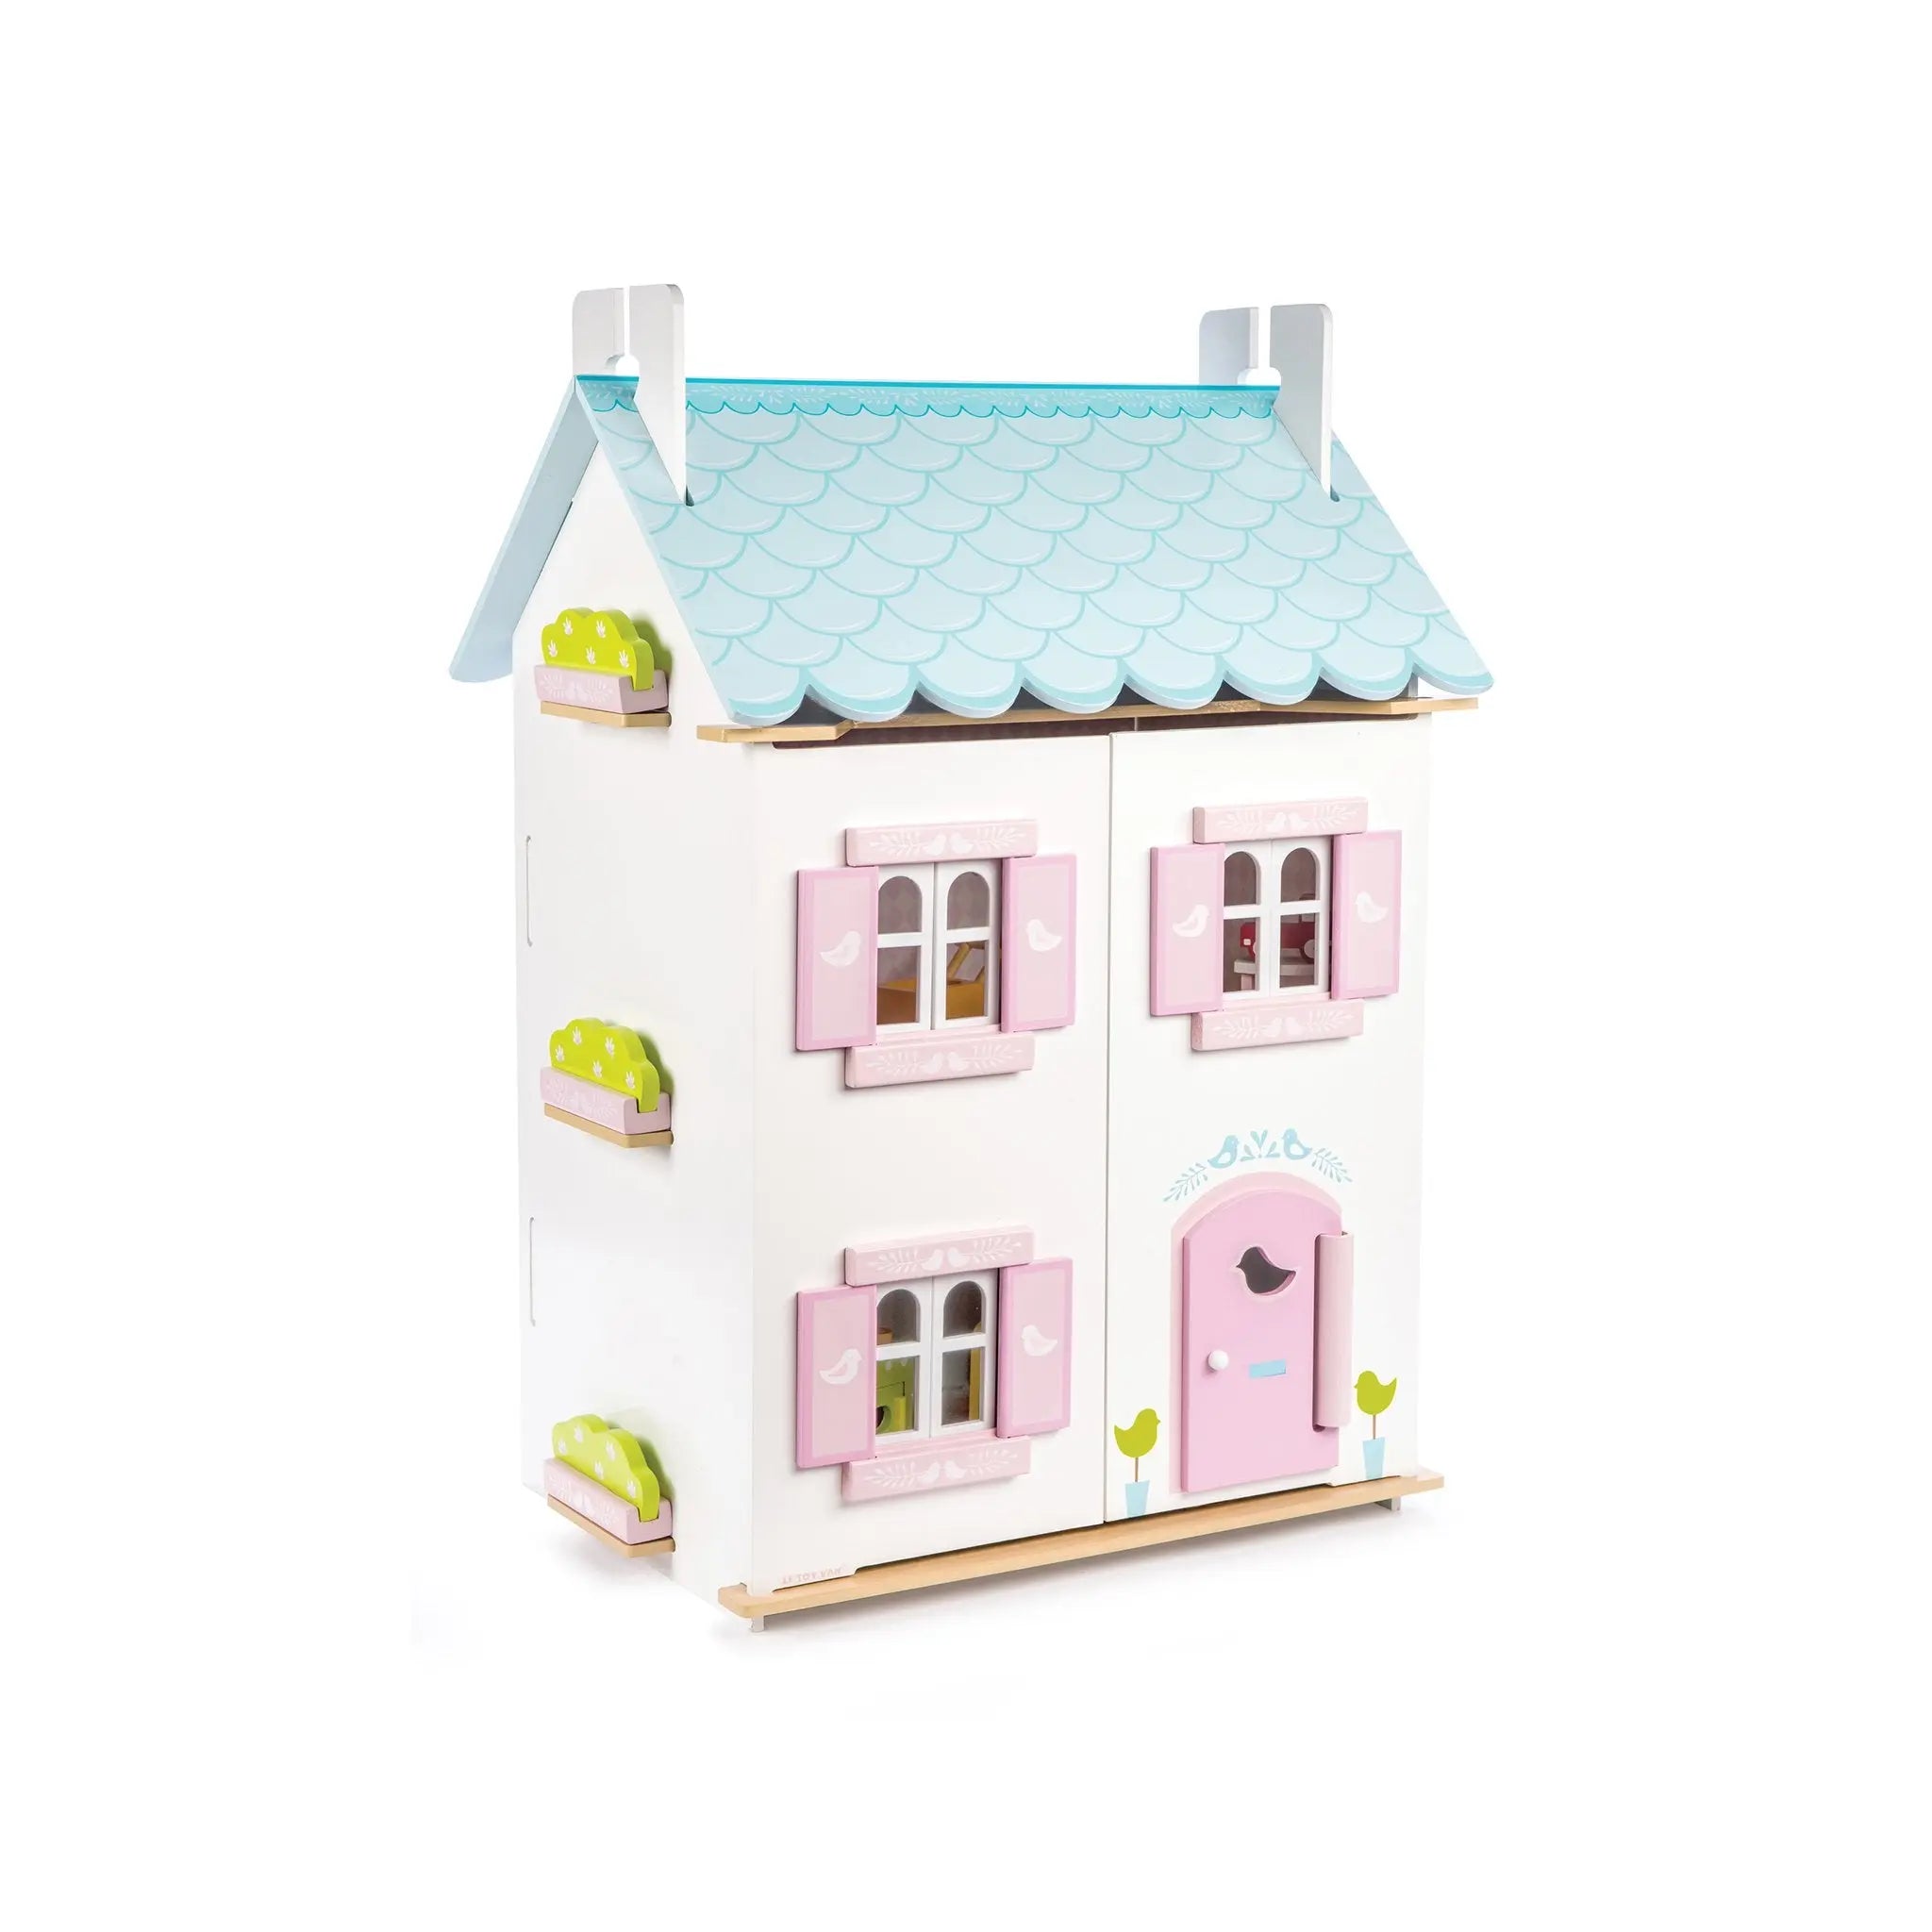 Blue Bird Cottage & Furniture-Wooden toys & more-Le Toy Van-Blue Almonds-London-South Kensington